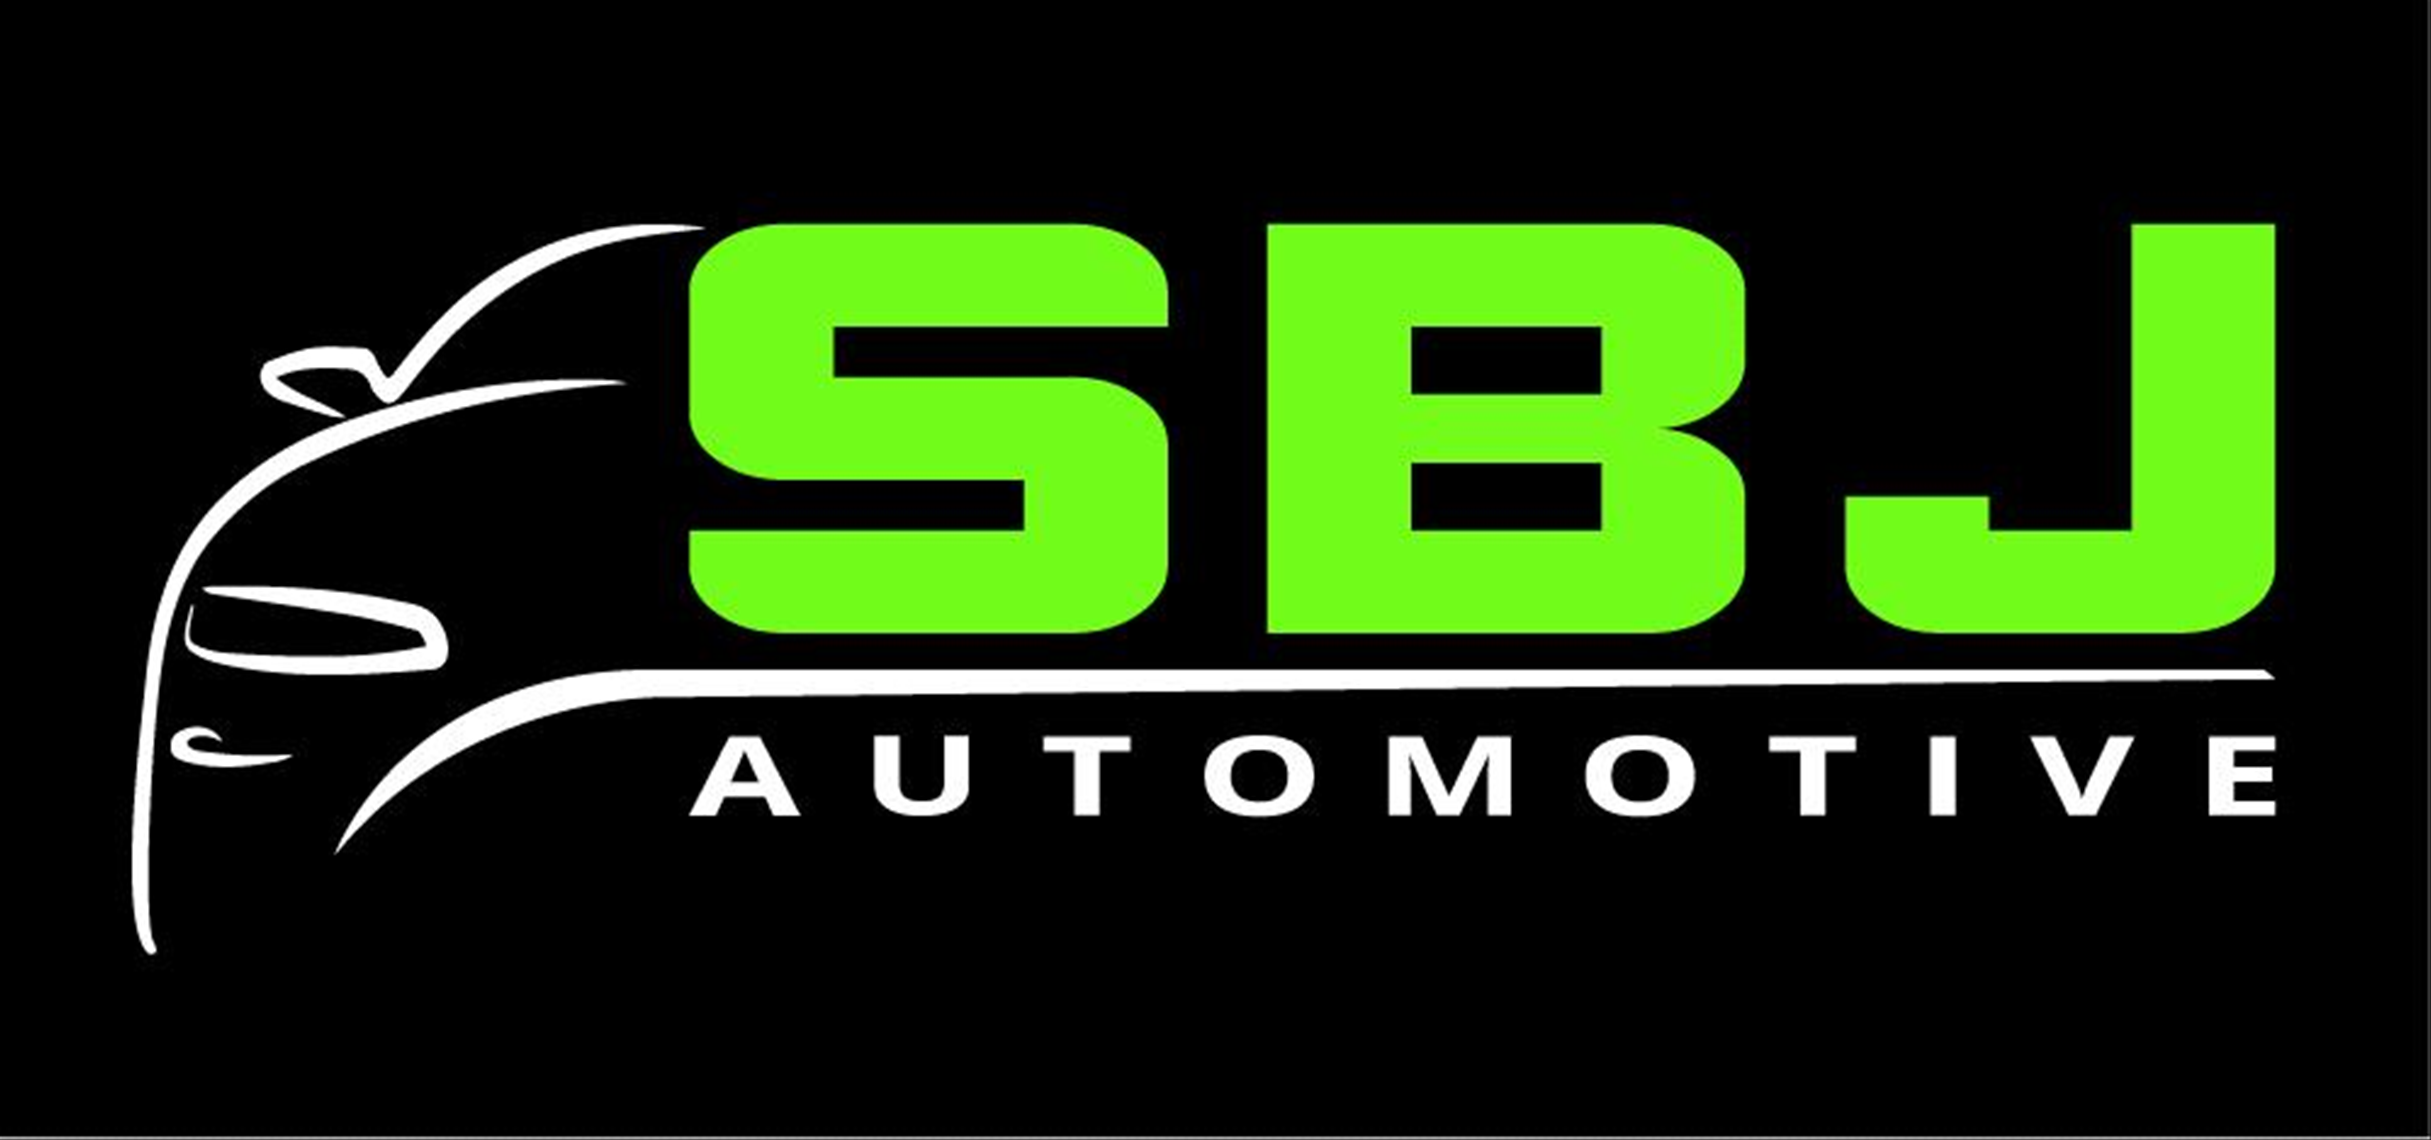 SBJ Automotive